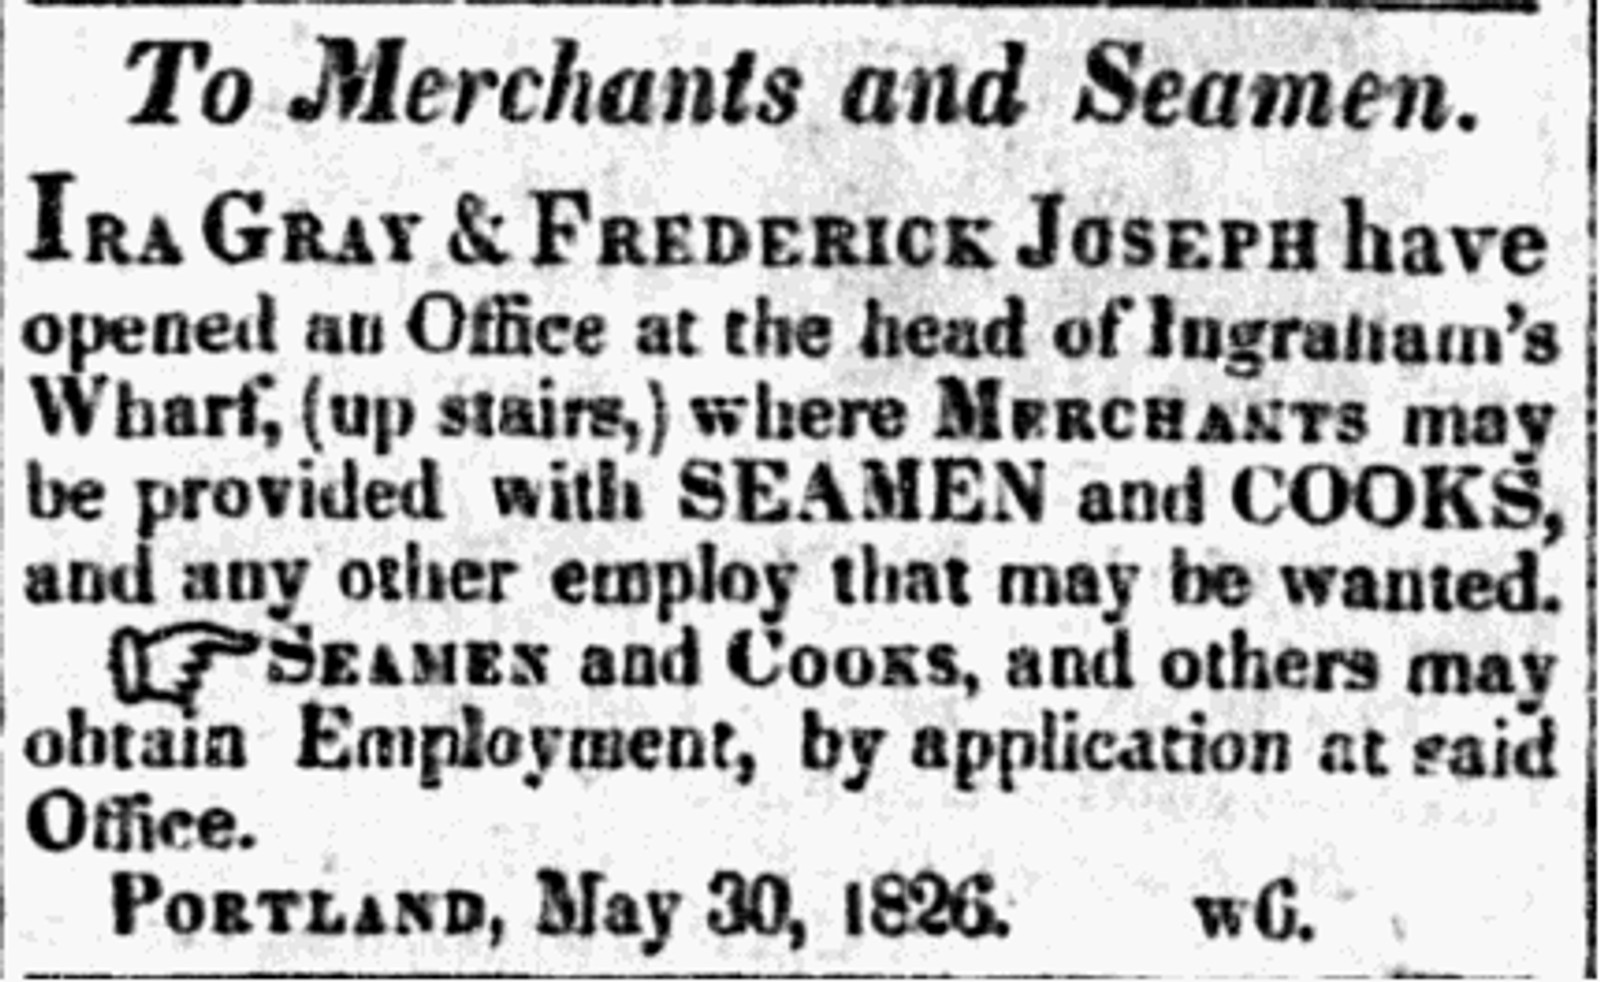 screenshot of a newspaper advertisement: To Merchants and Seamen